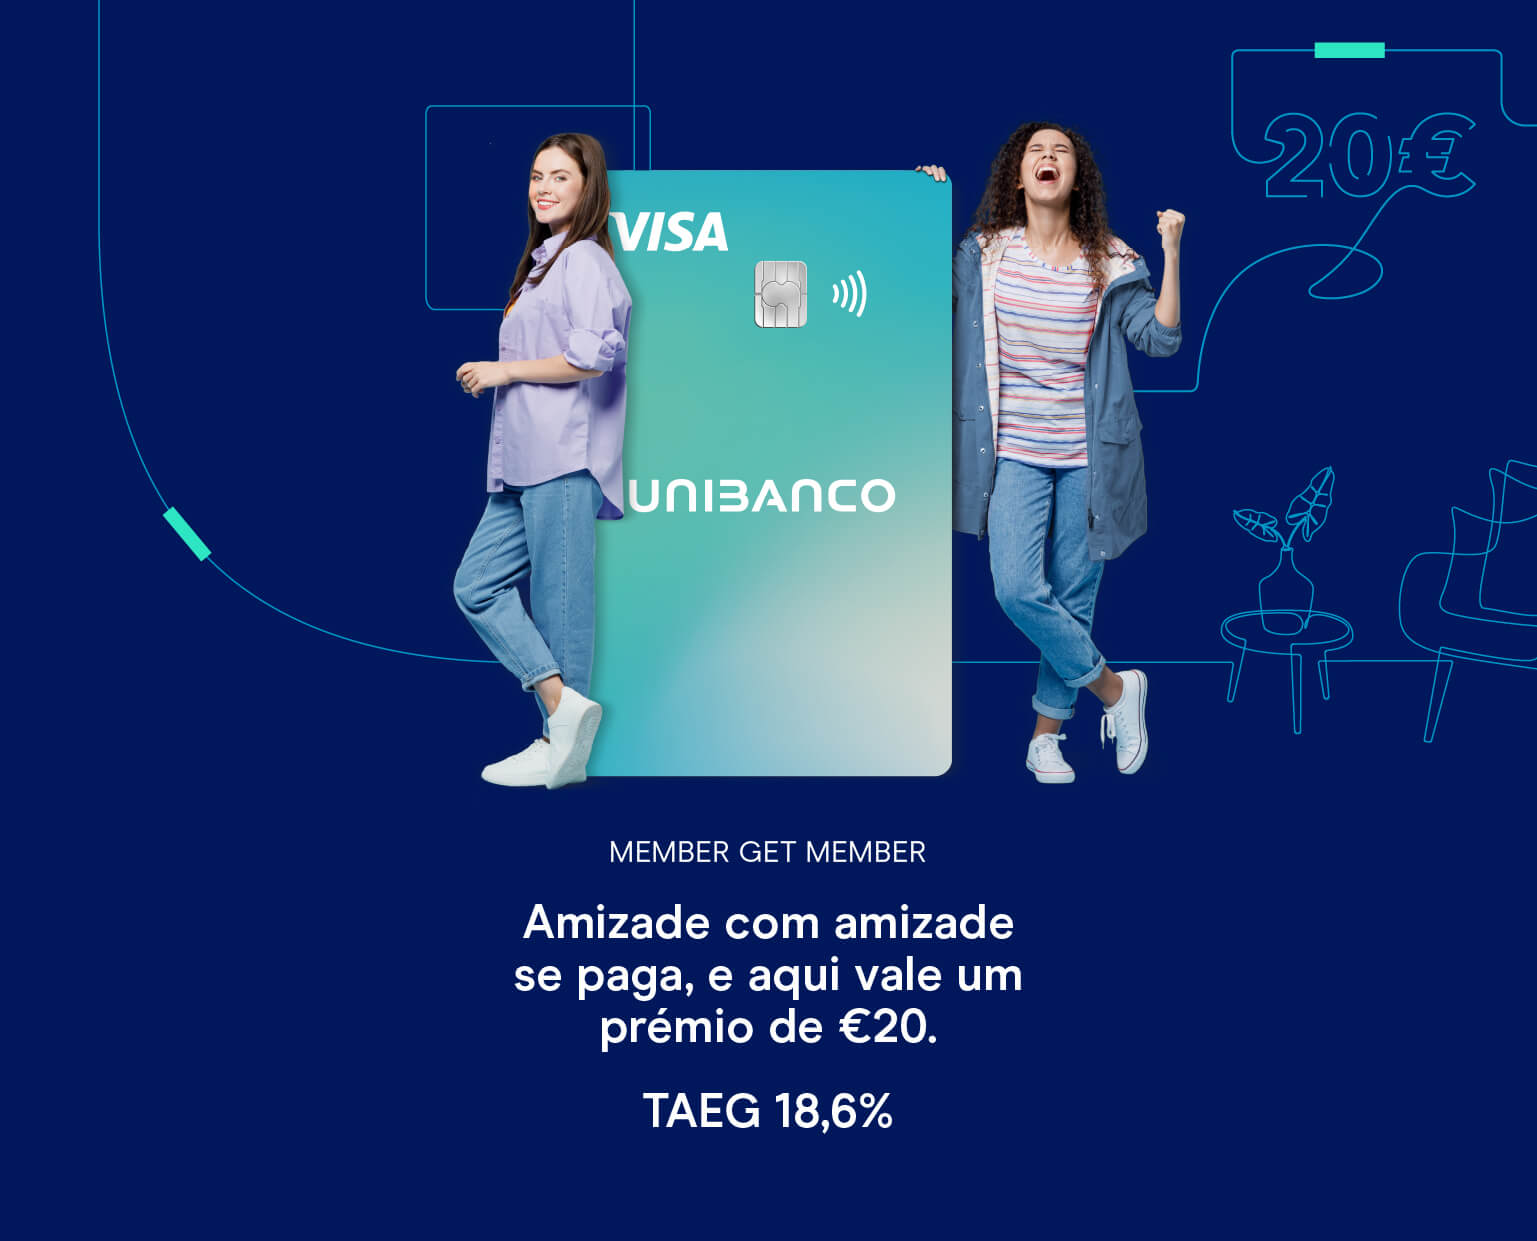 Campanha member get member natal cartão de crédito Unibanco